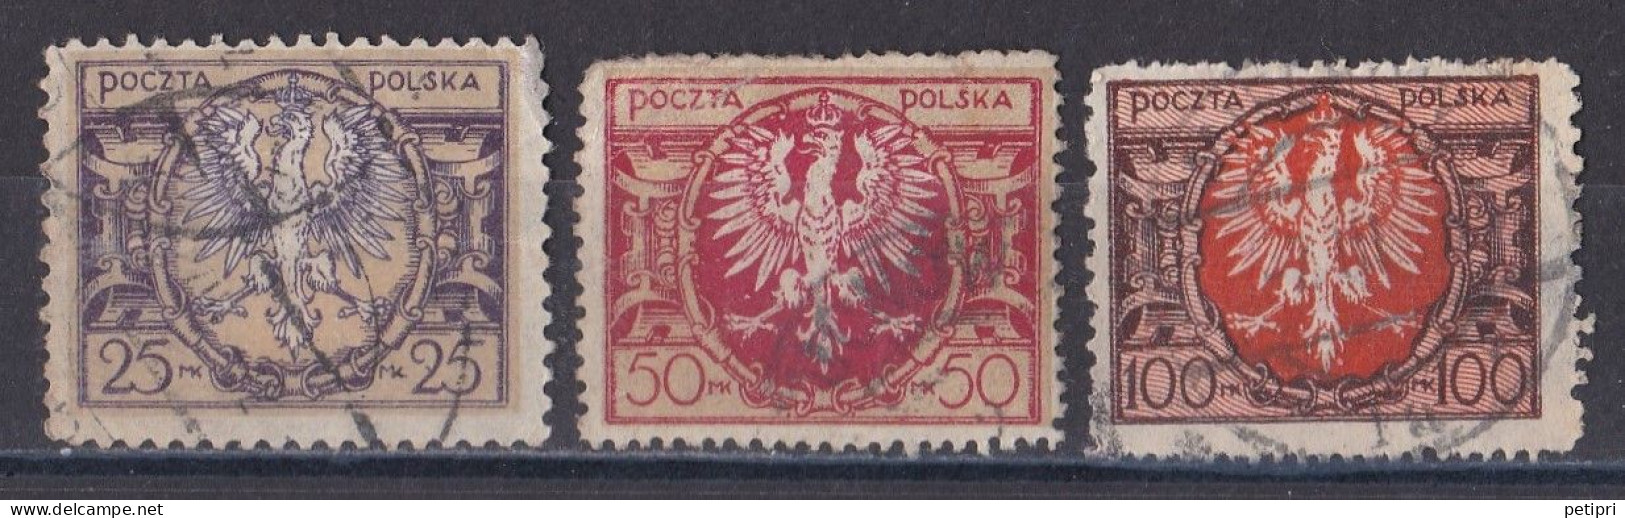 Pologne - République 1919  -  1939   Y & T N °  227   228   229  Oblitérés - Usados